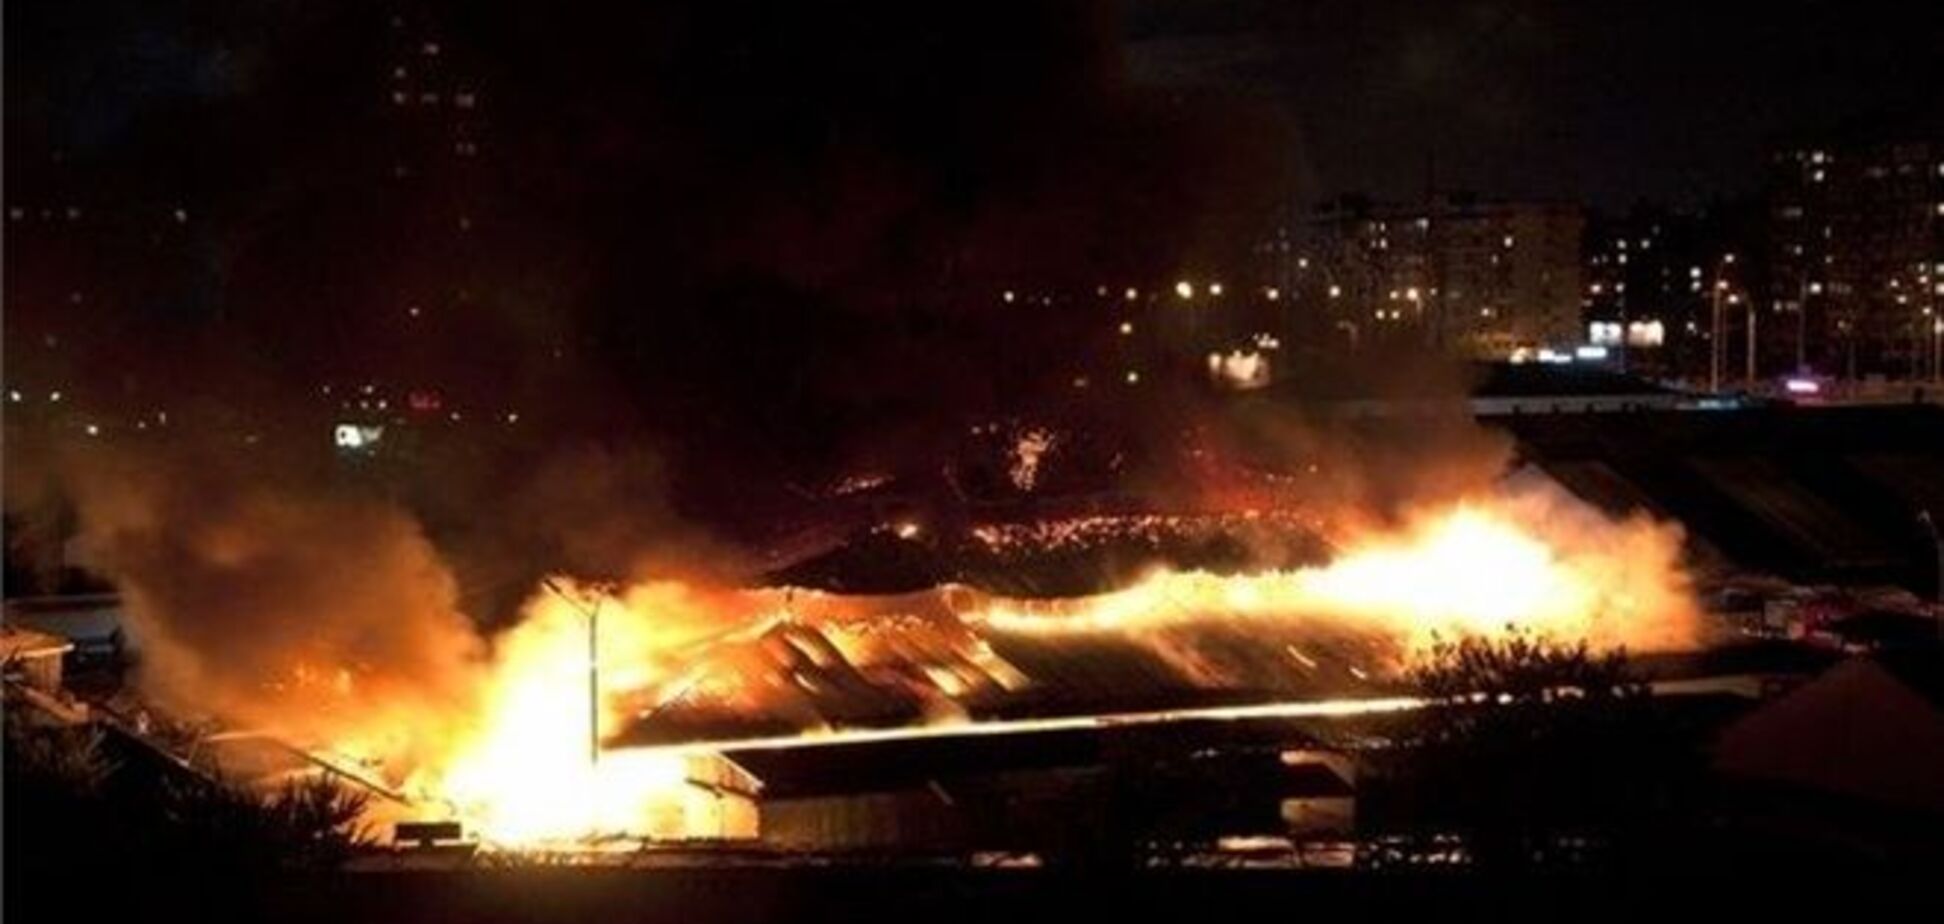 Как горел рынок в Киеве: очевидцы говорят о взрывах